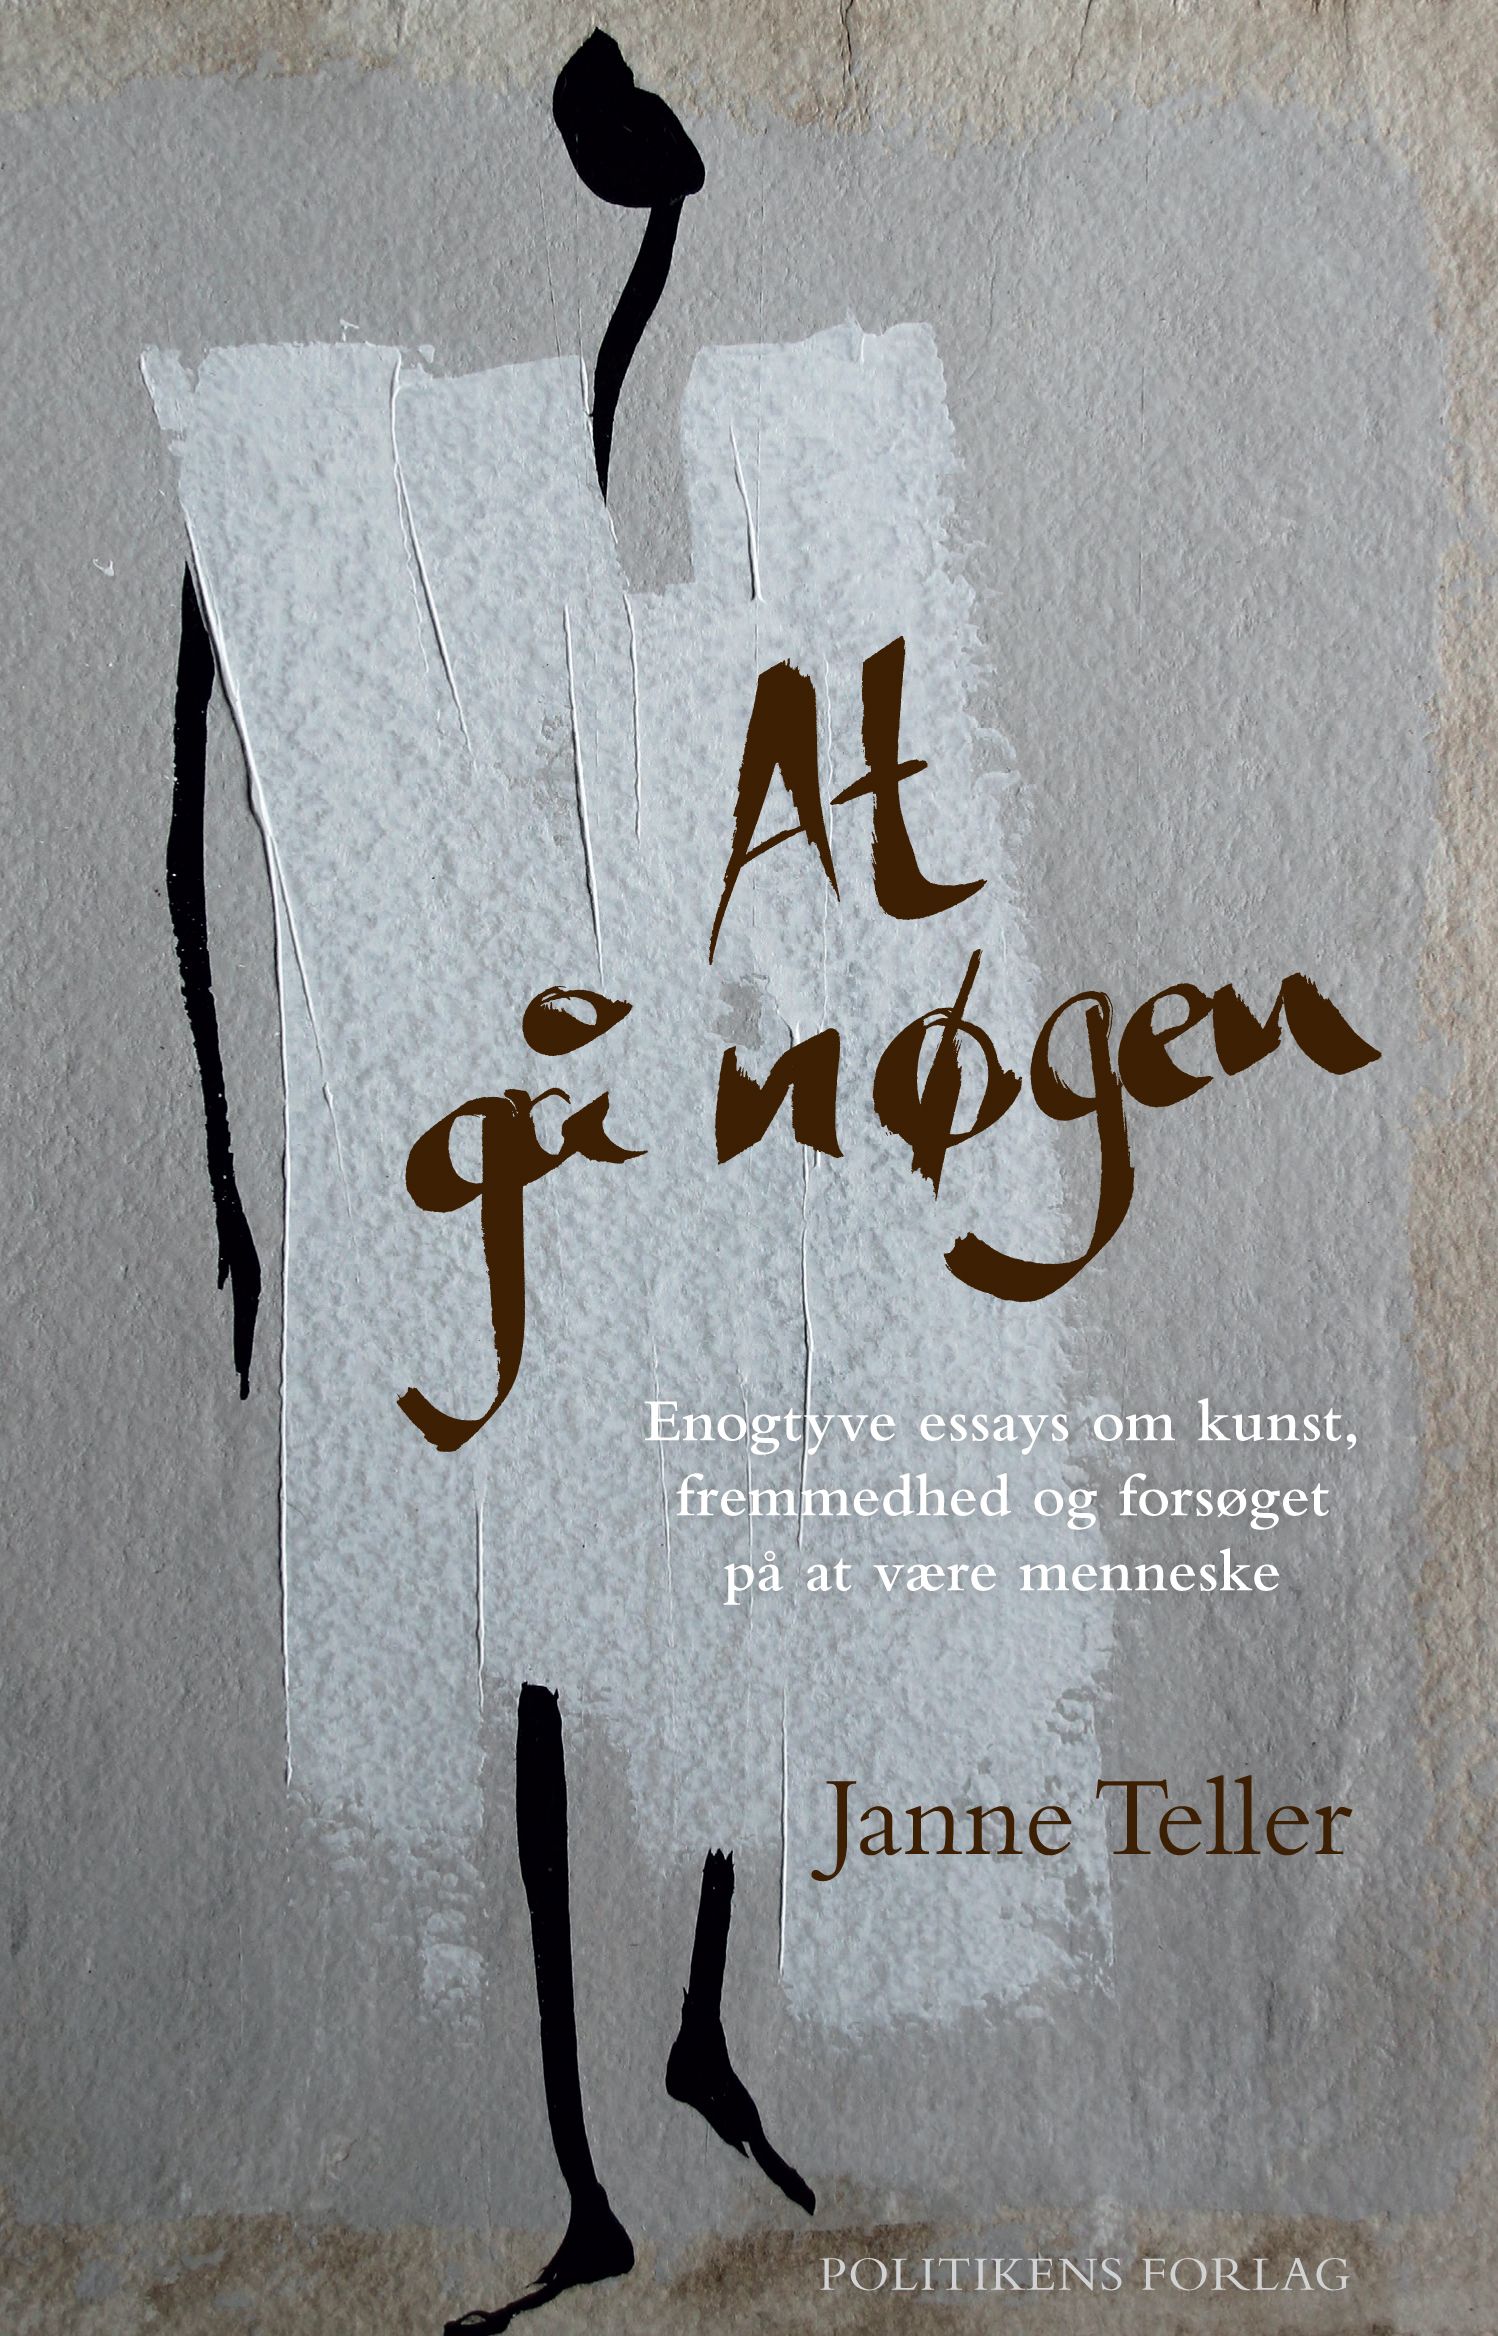 At gå nøgen, eBook by Janne Teller